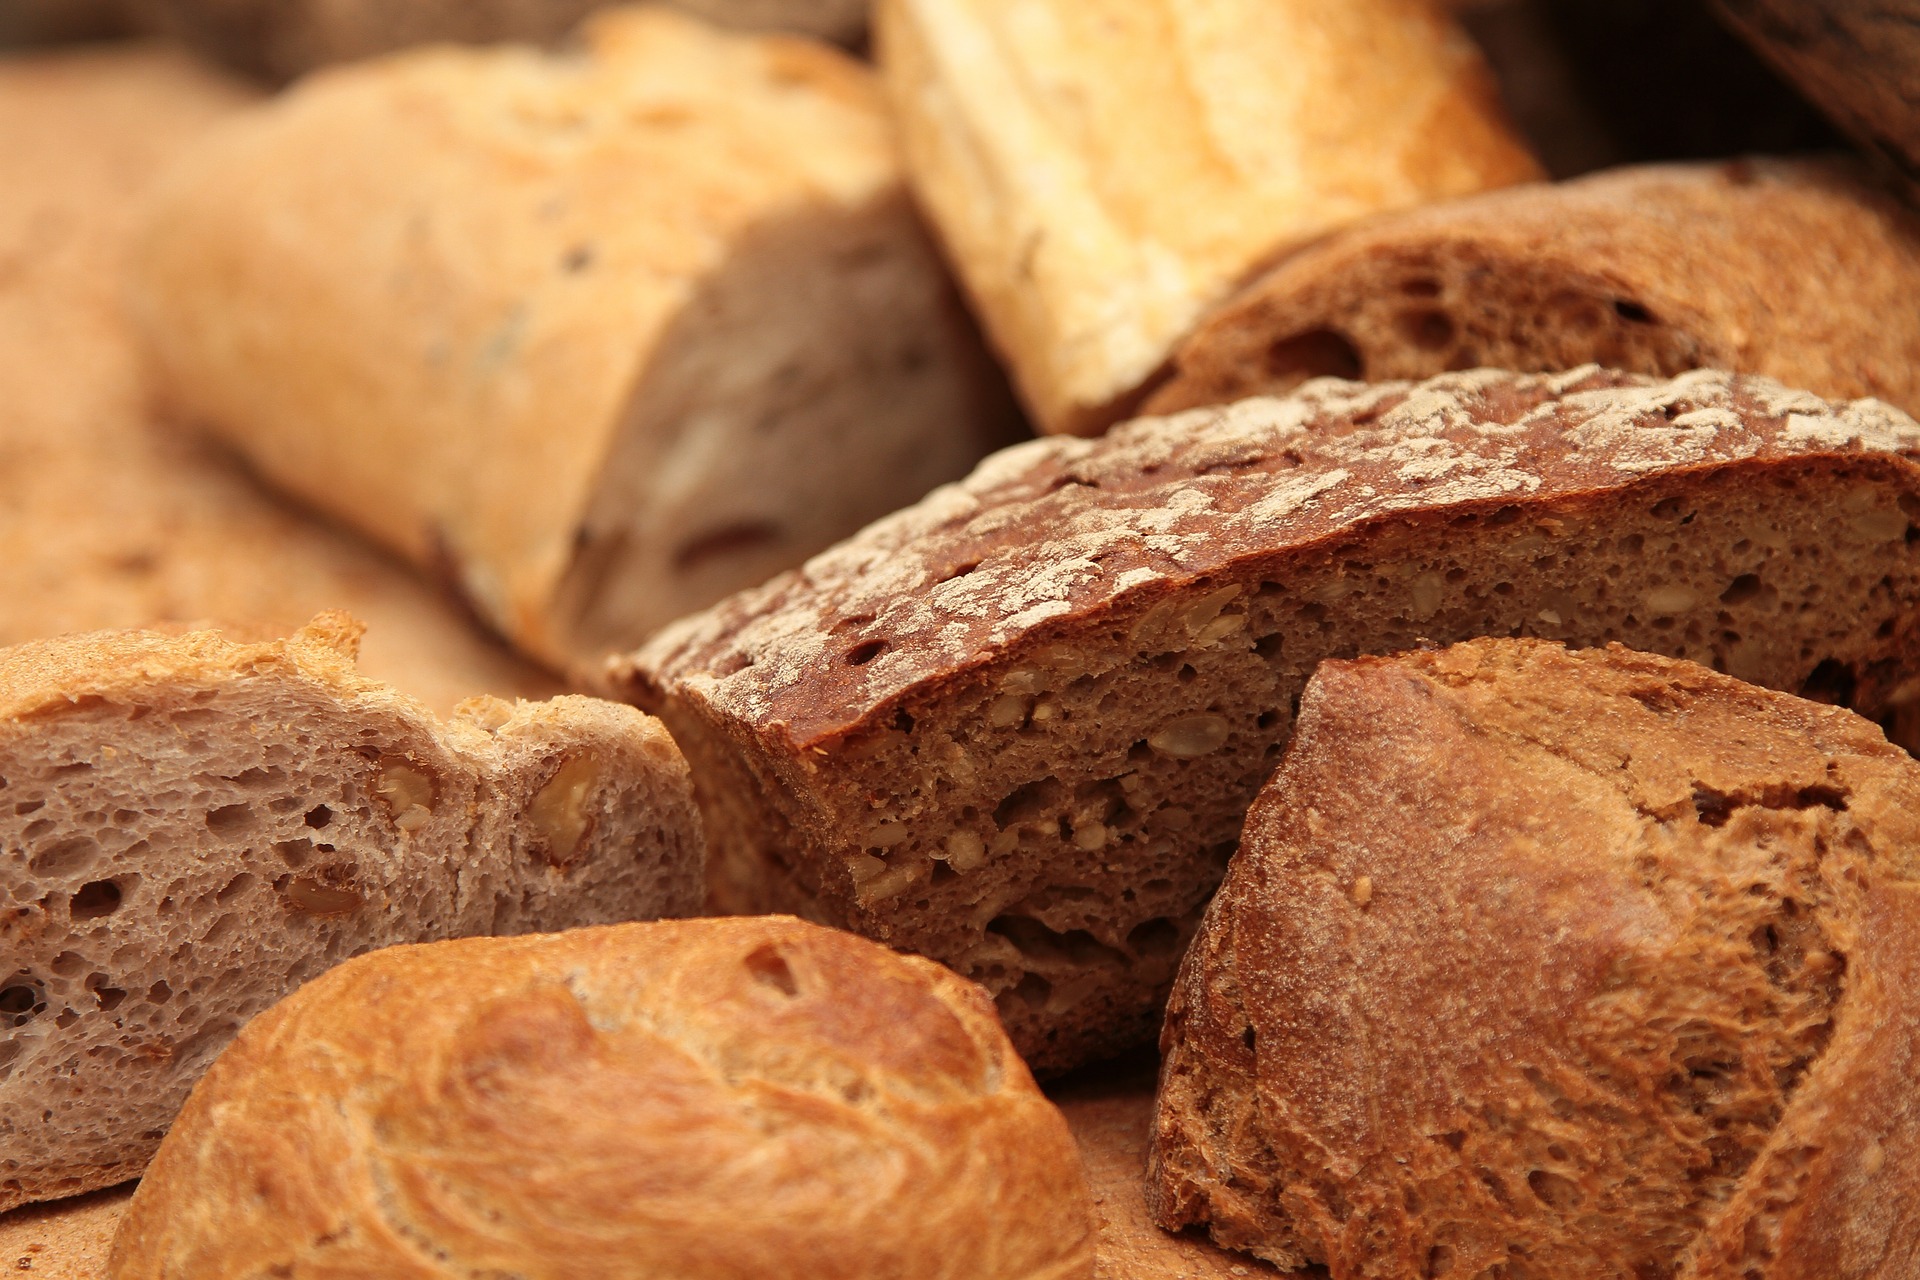 Marocco di Montignoso bread